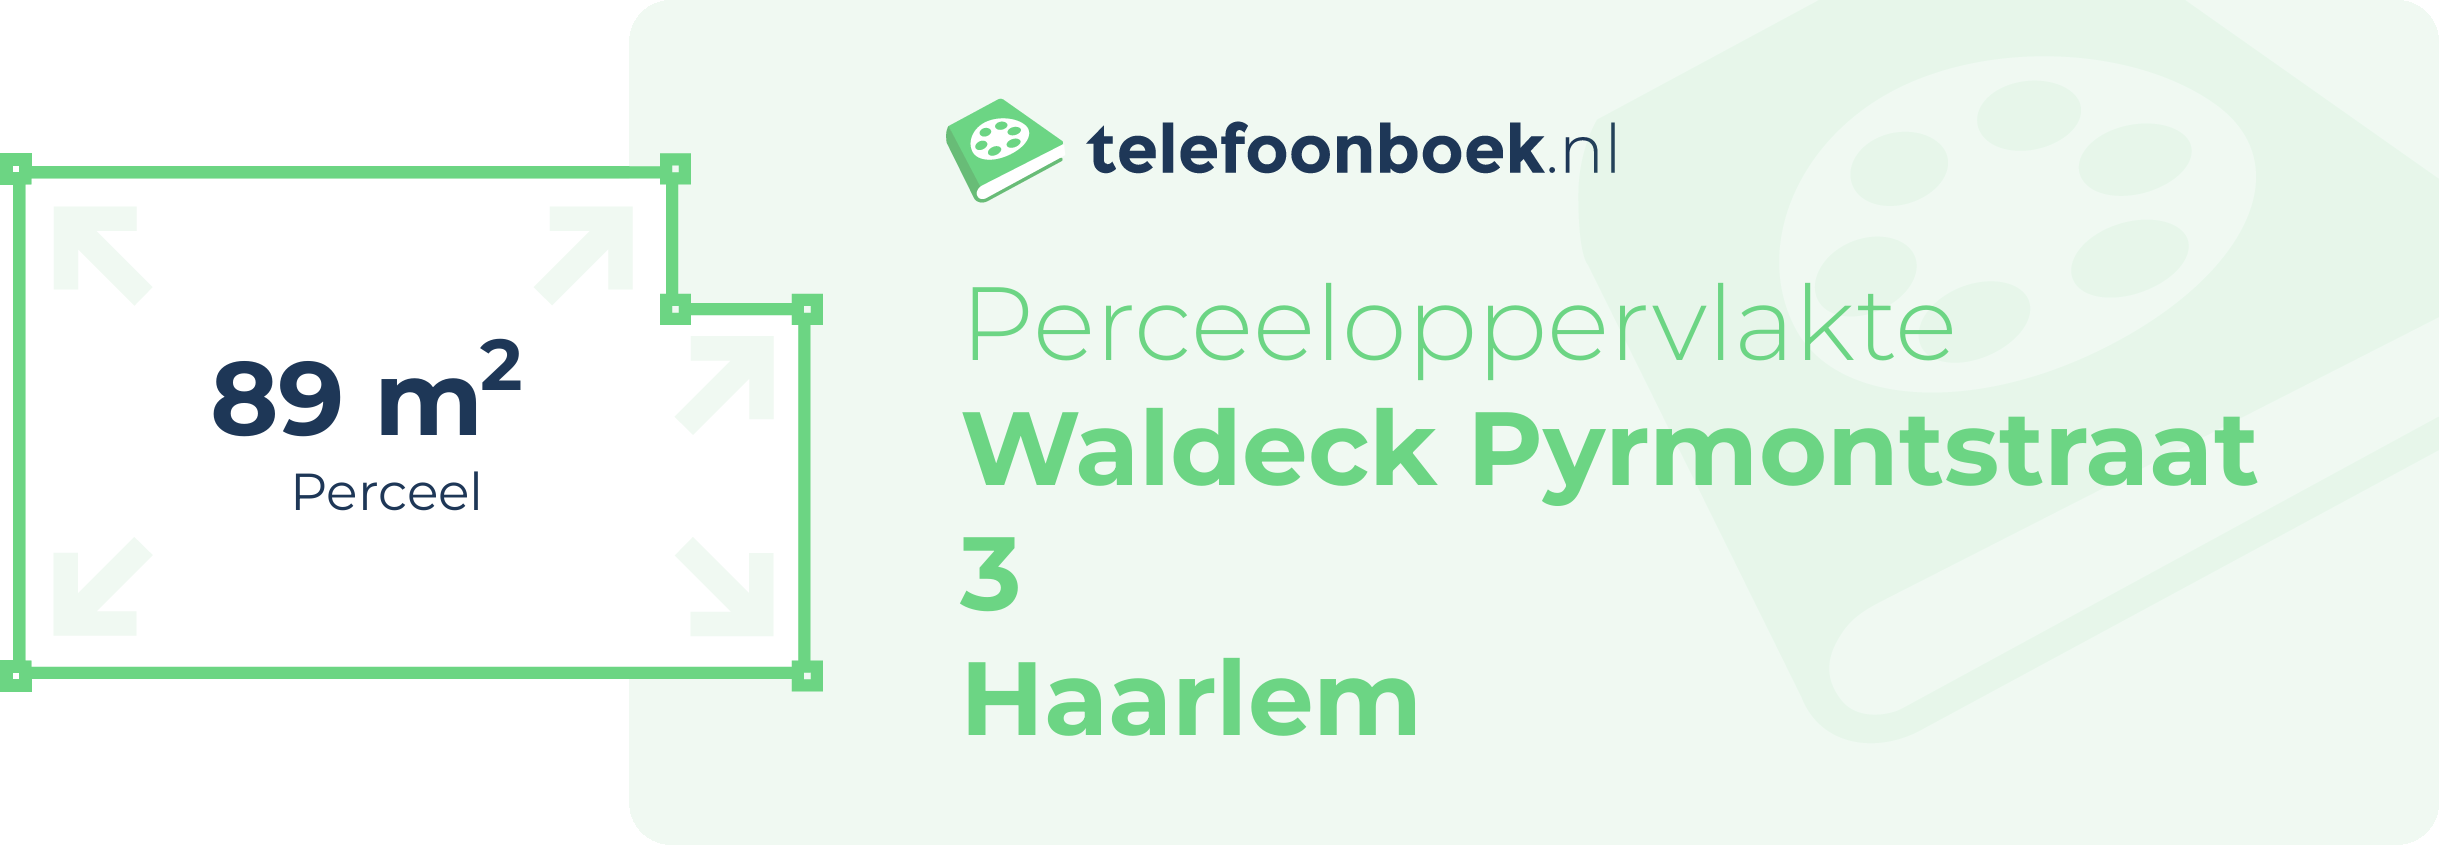 Perceeloppervlakte Waldeck Pyrmontstraat 3 Haarlem